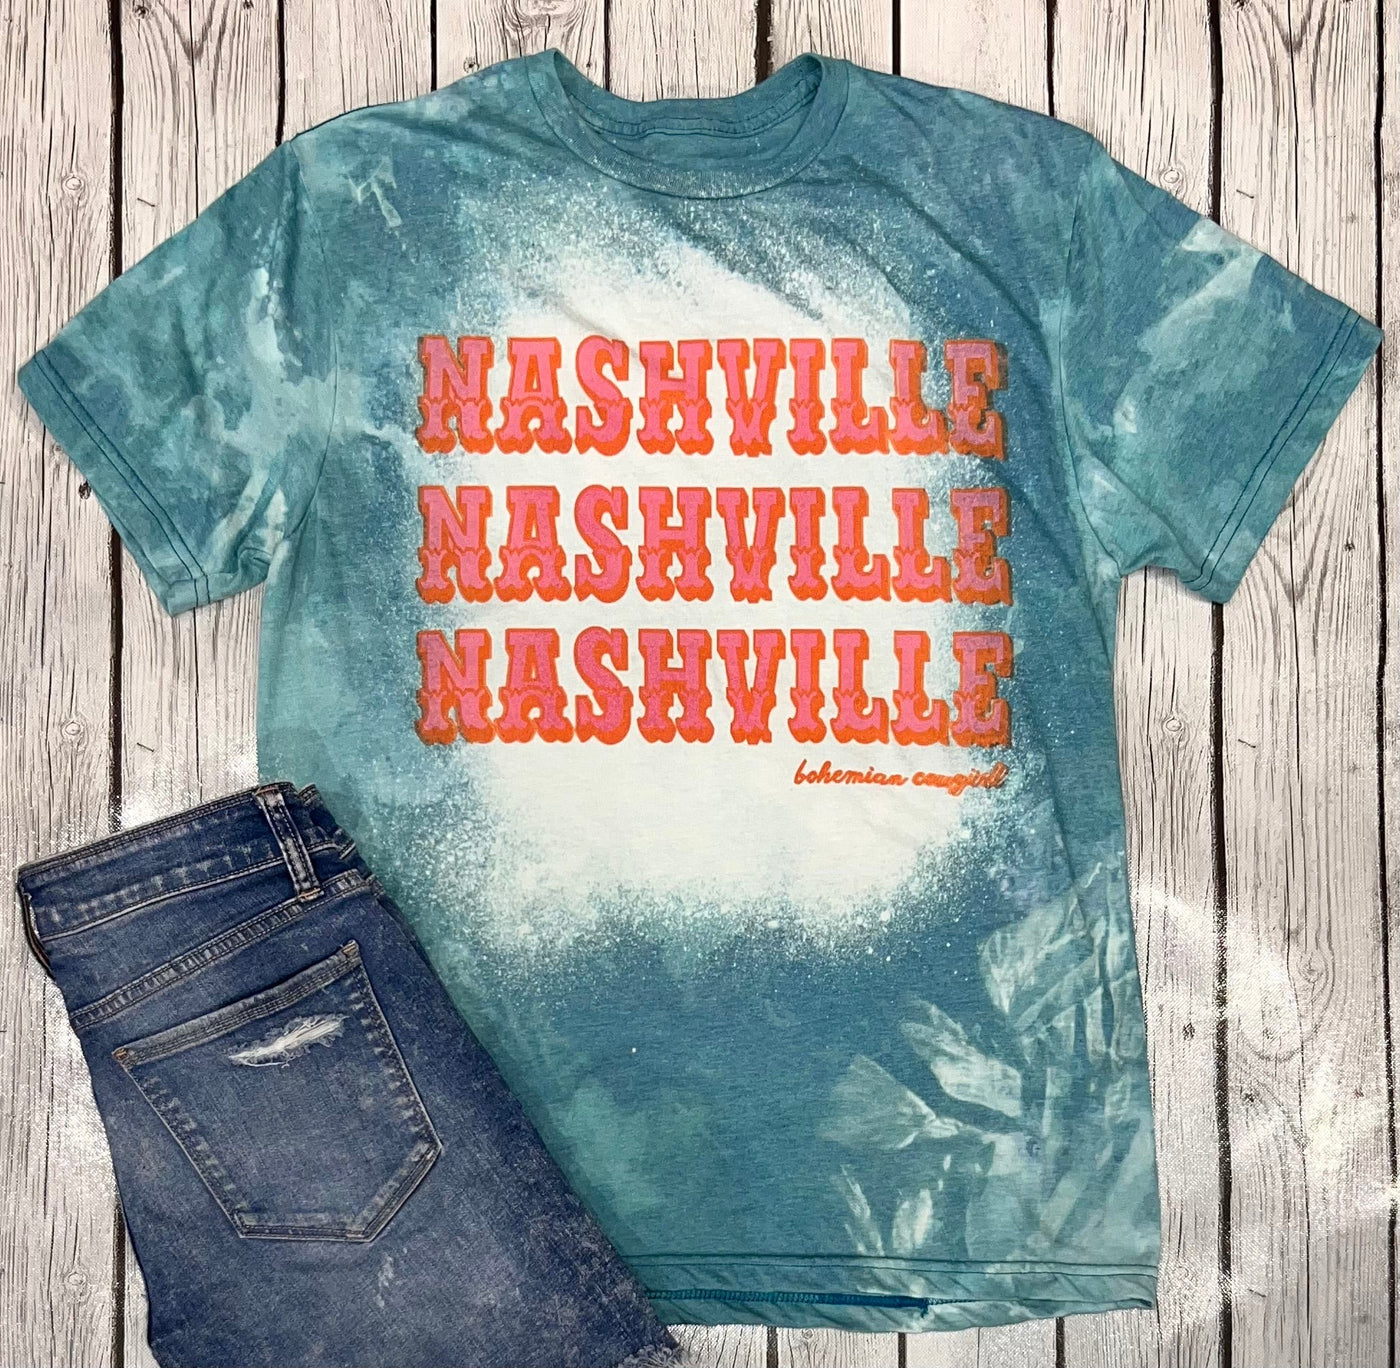 Nashville X3 - Wholesale